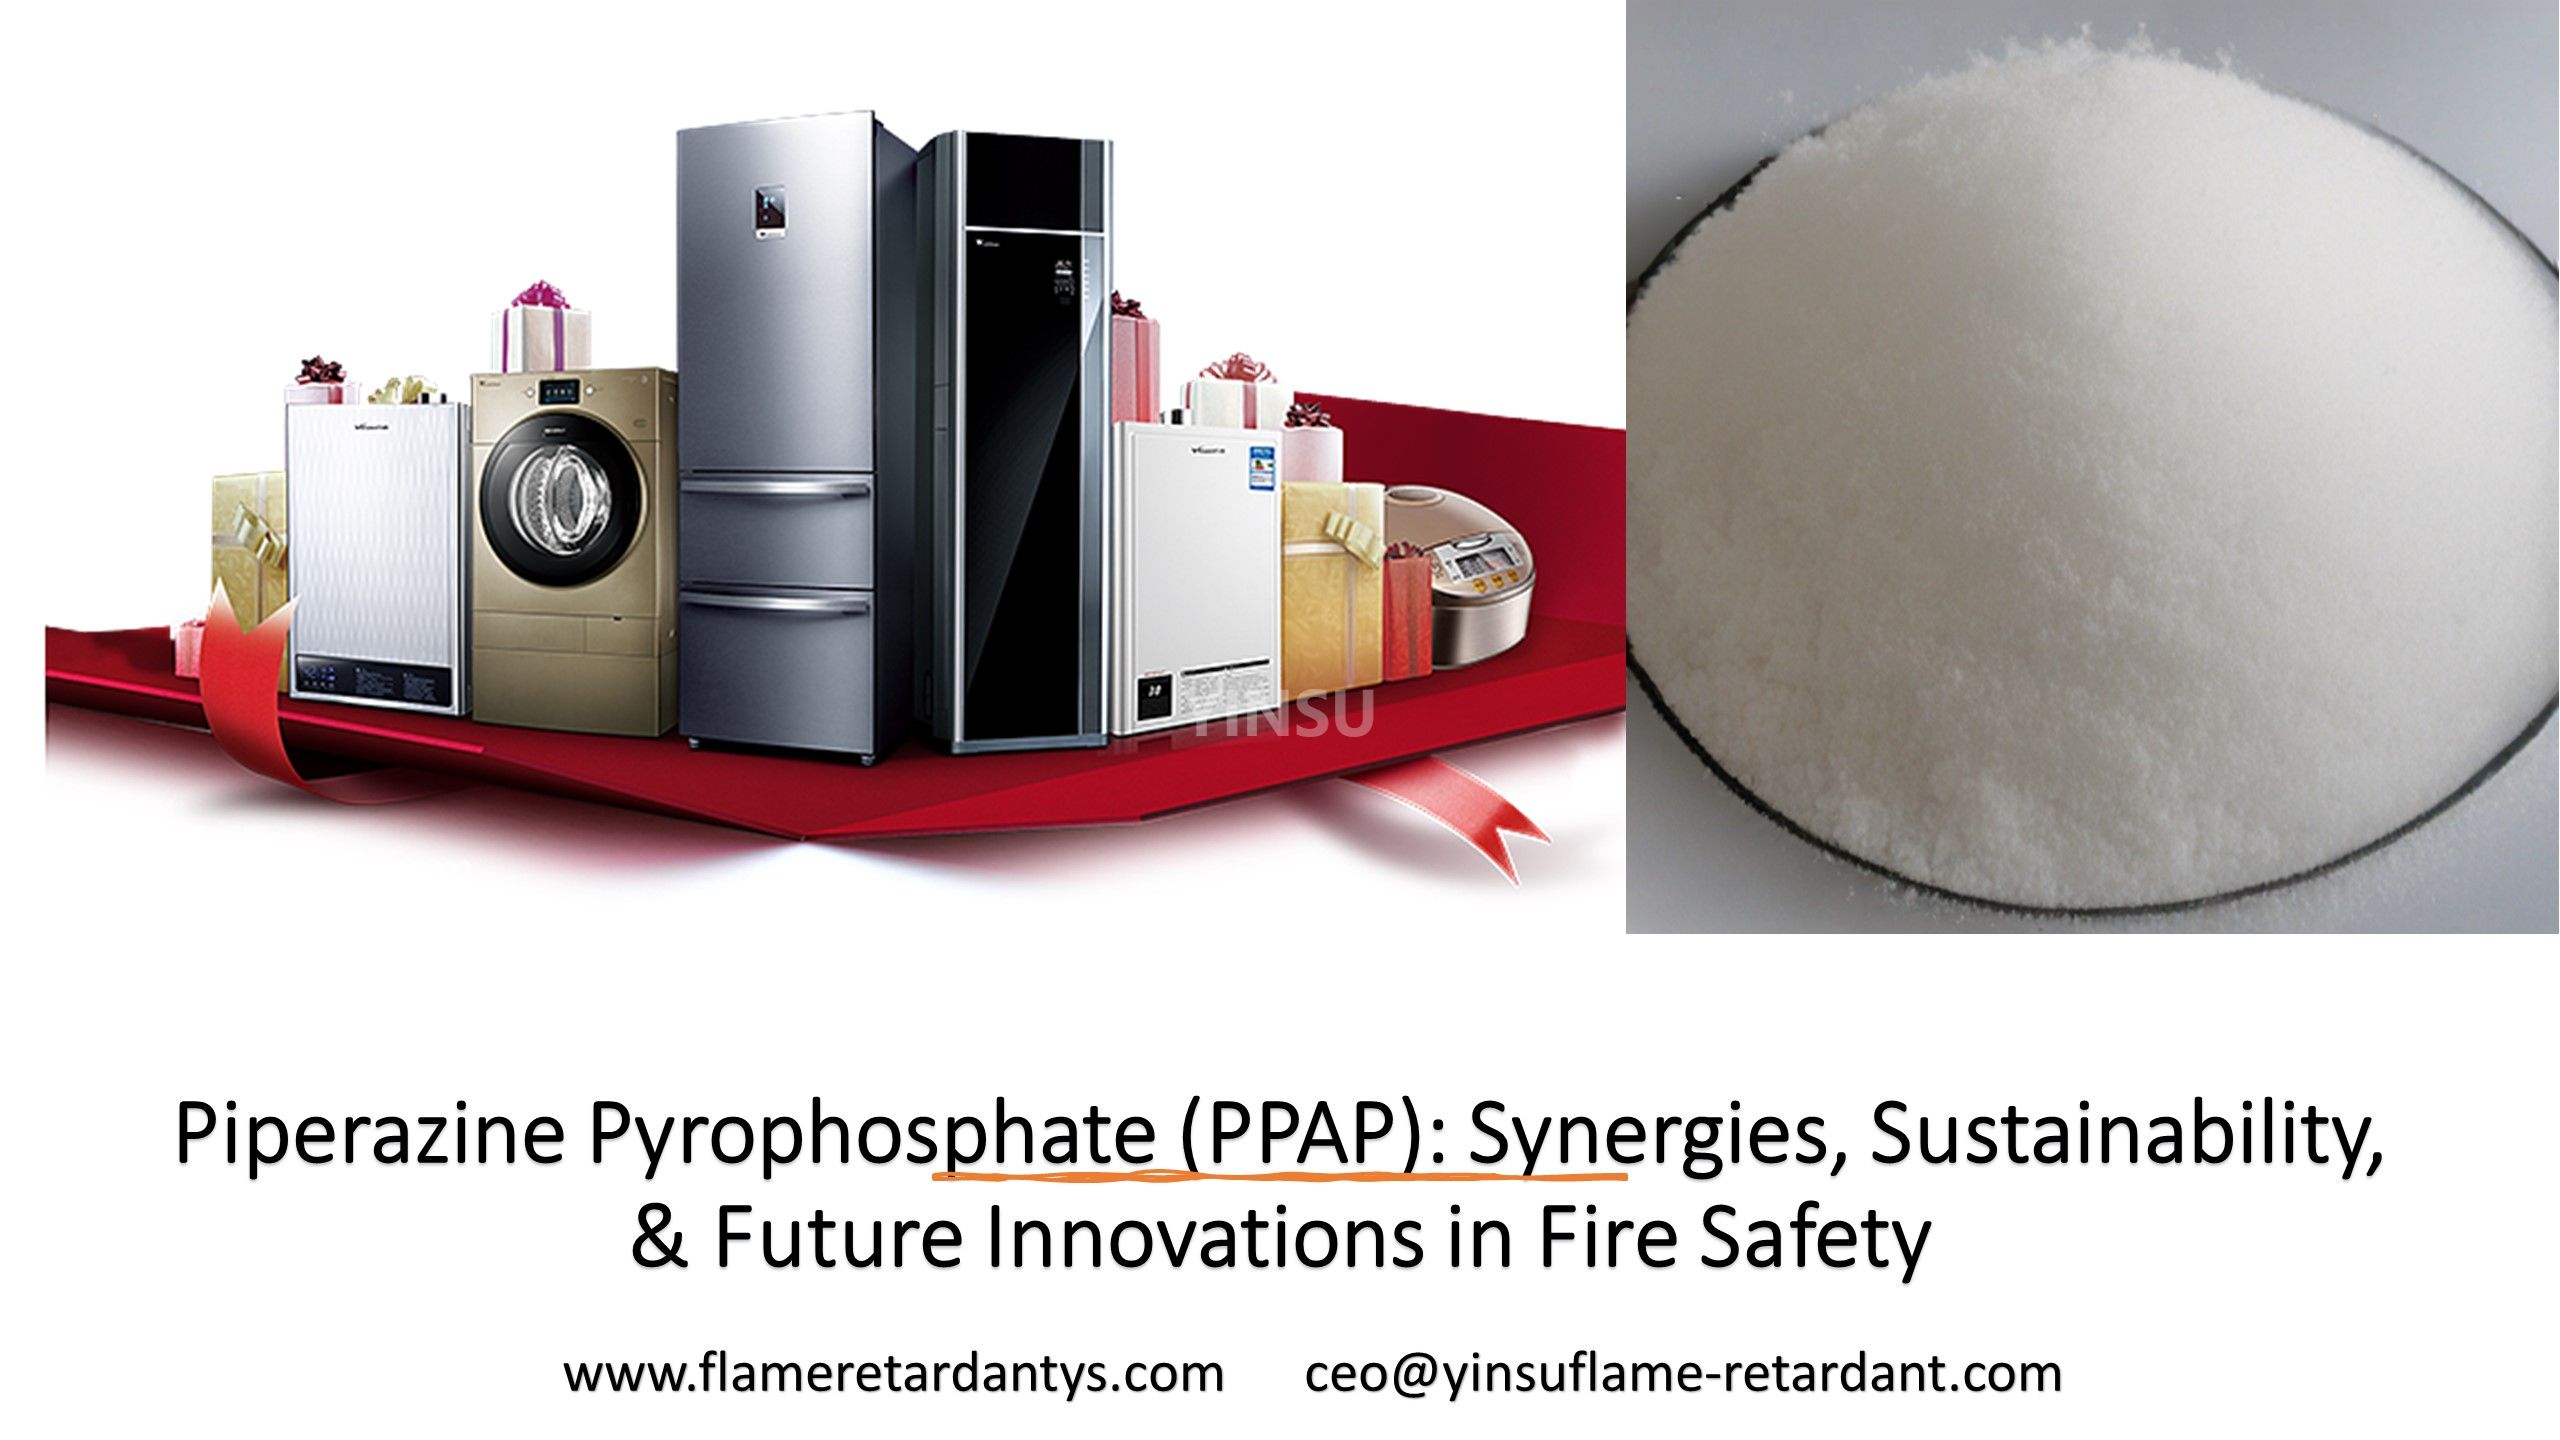 Pyrophosphate de pipérazine (PPAP) : synergies, durabilité et innovations futures en matière de sécurité incendie